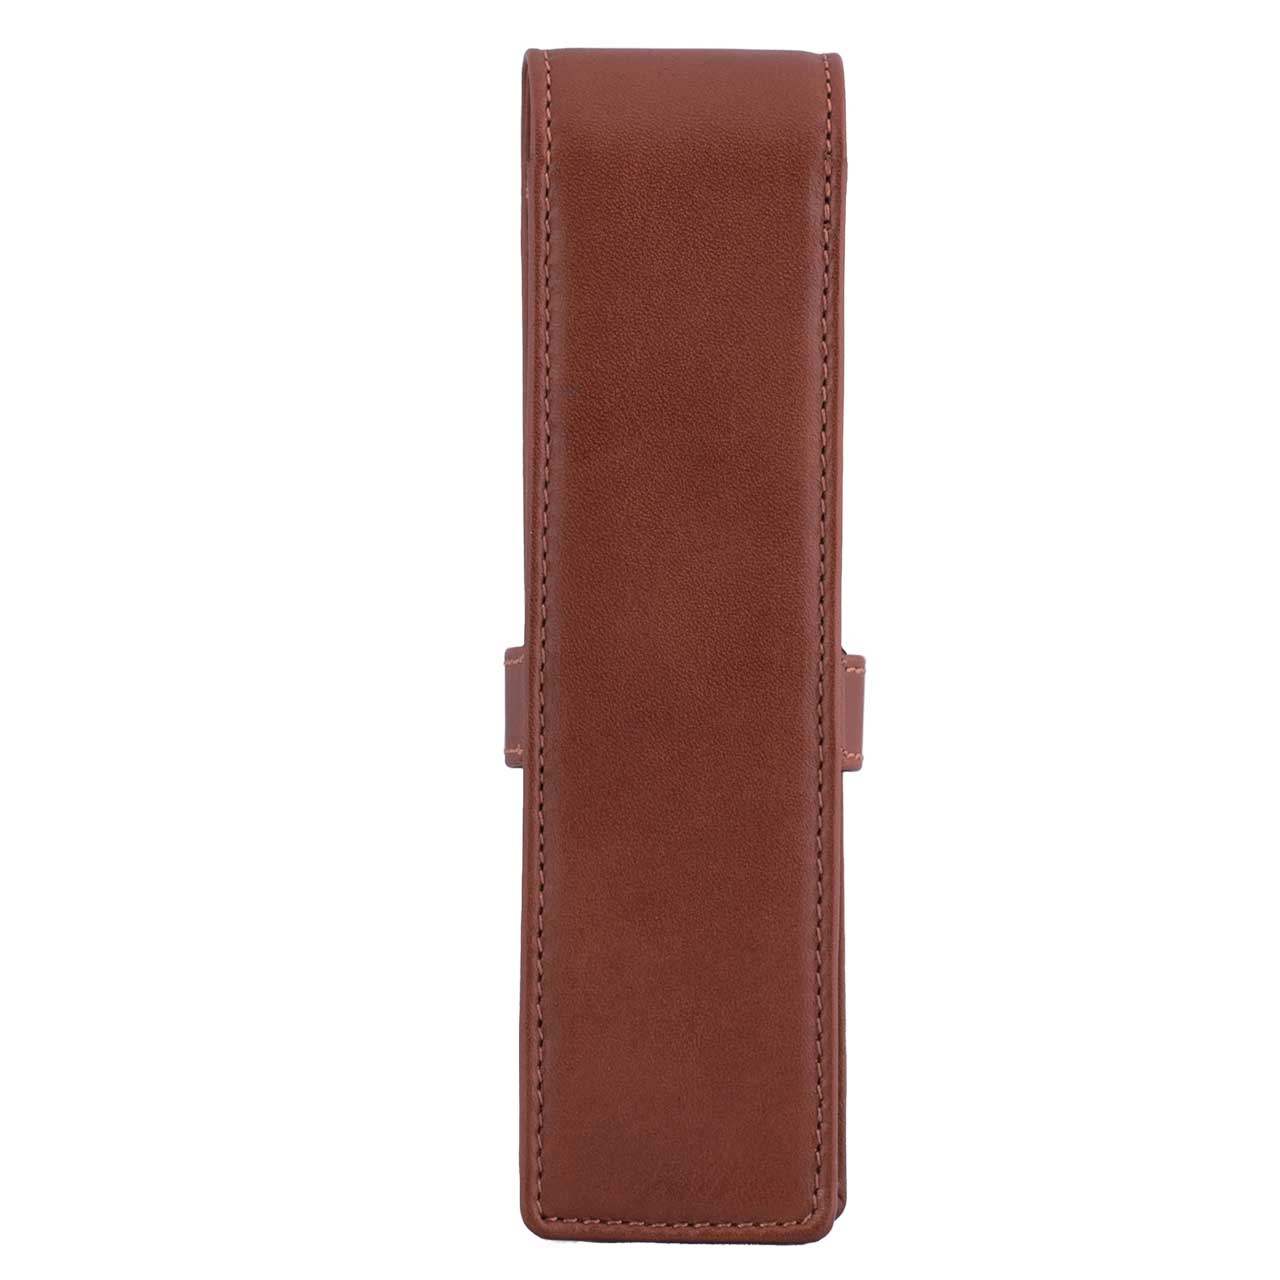 DiLoro Double Pen Case Holder in Top Quality, Full Grain Nappa Leather - Bugatti Tan, Back View